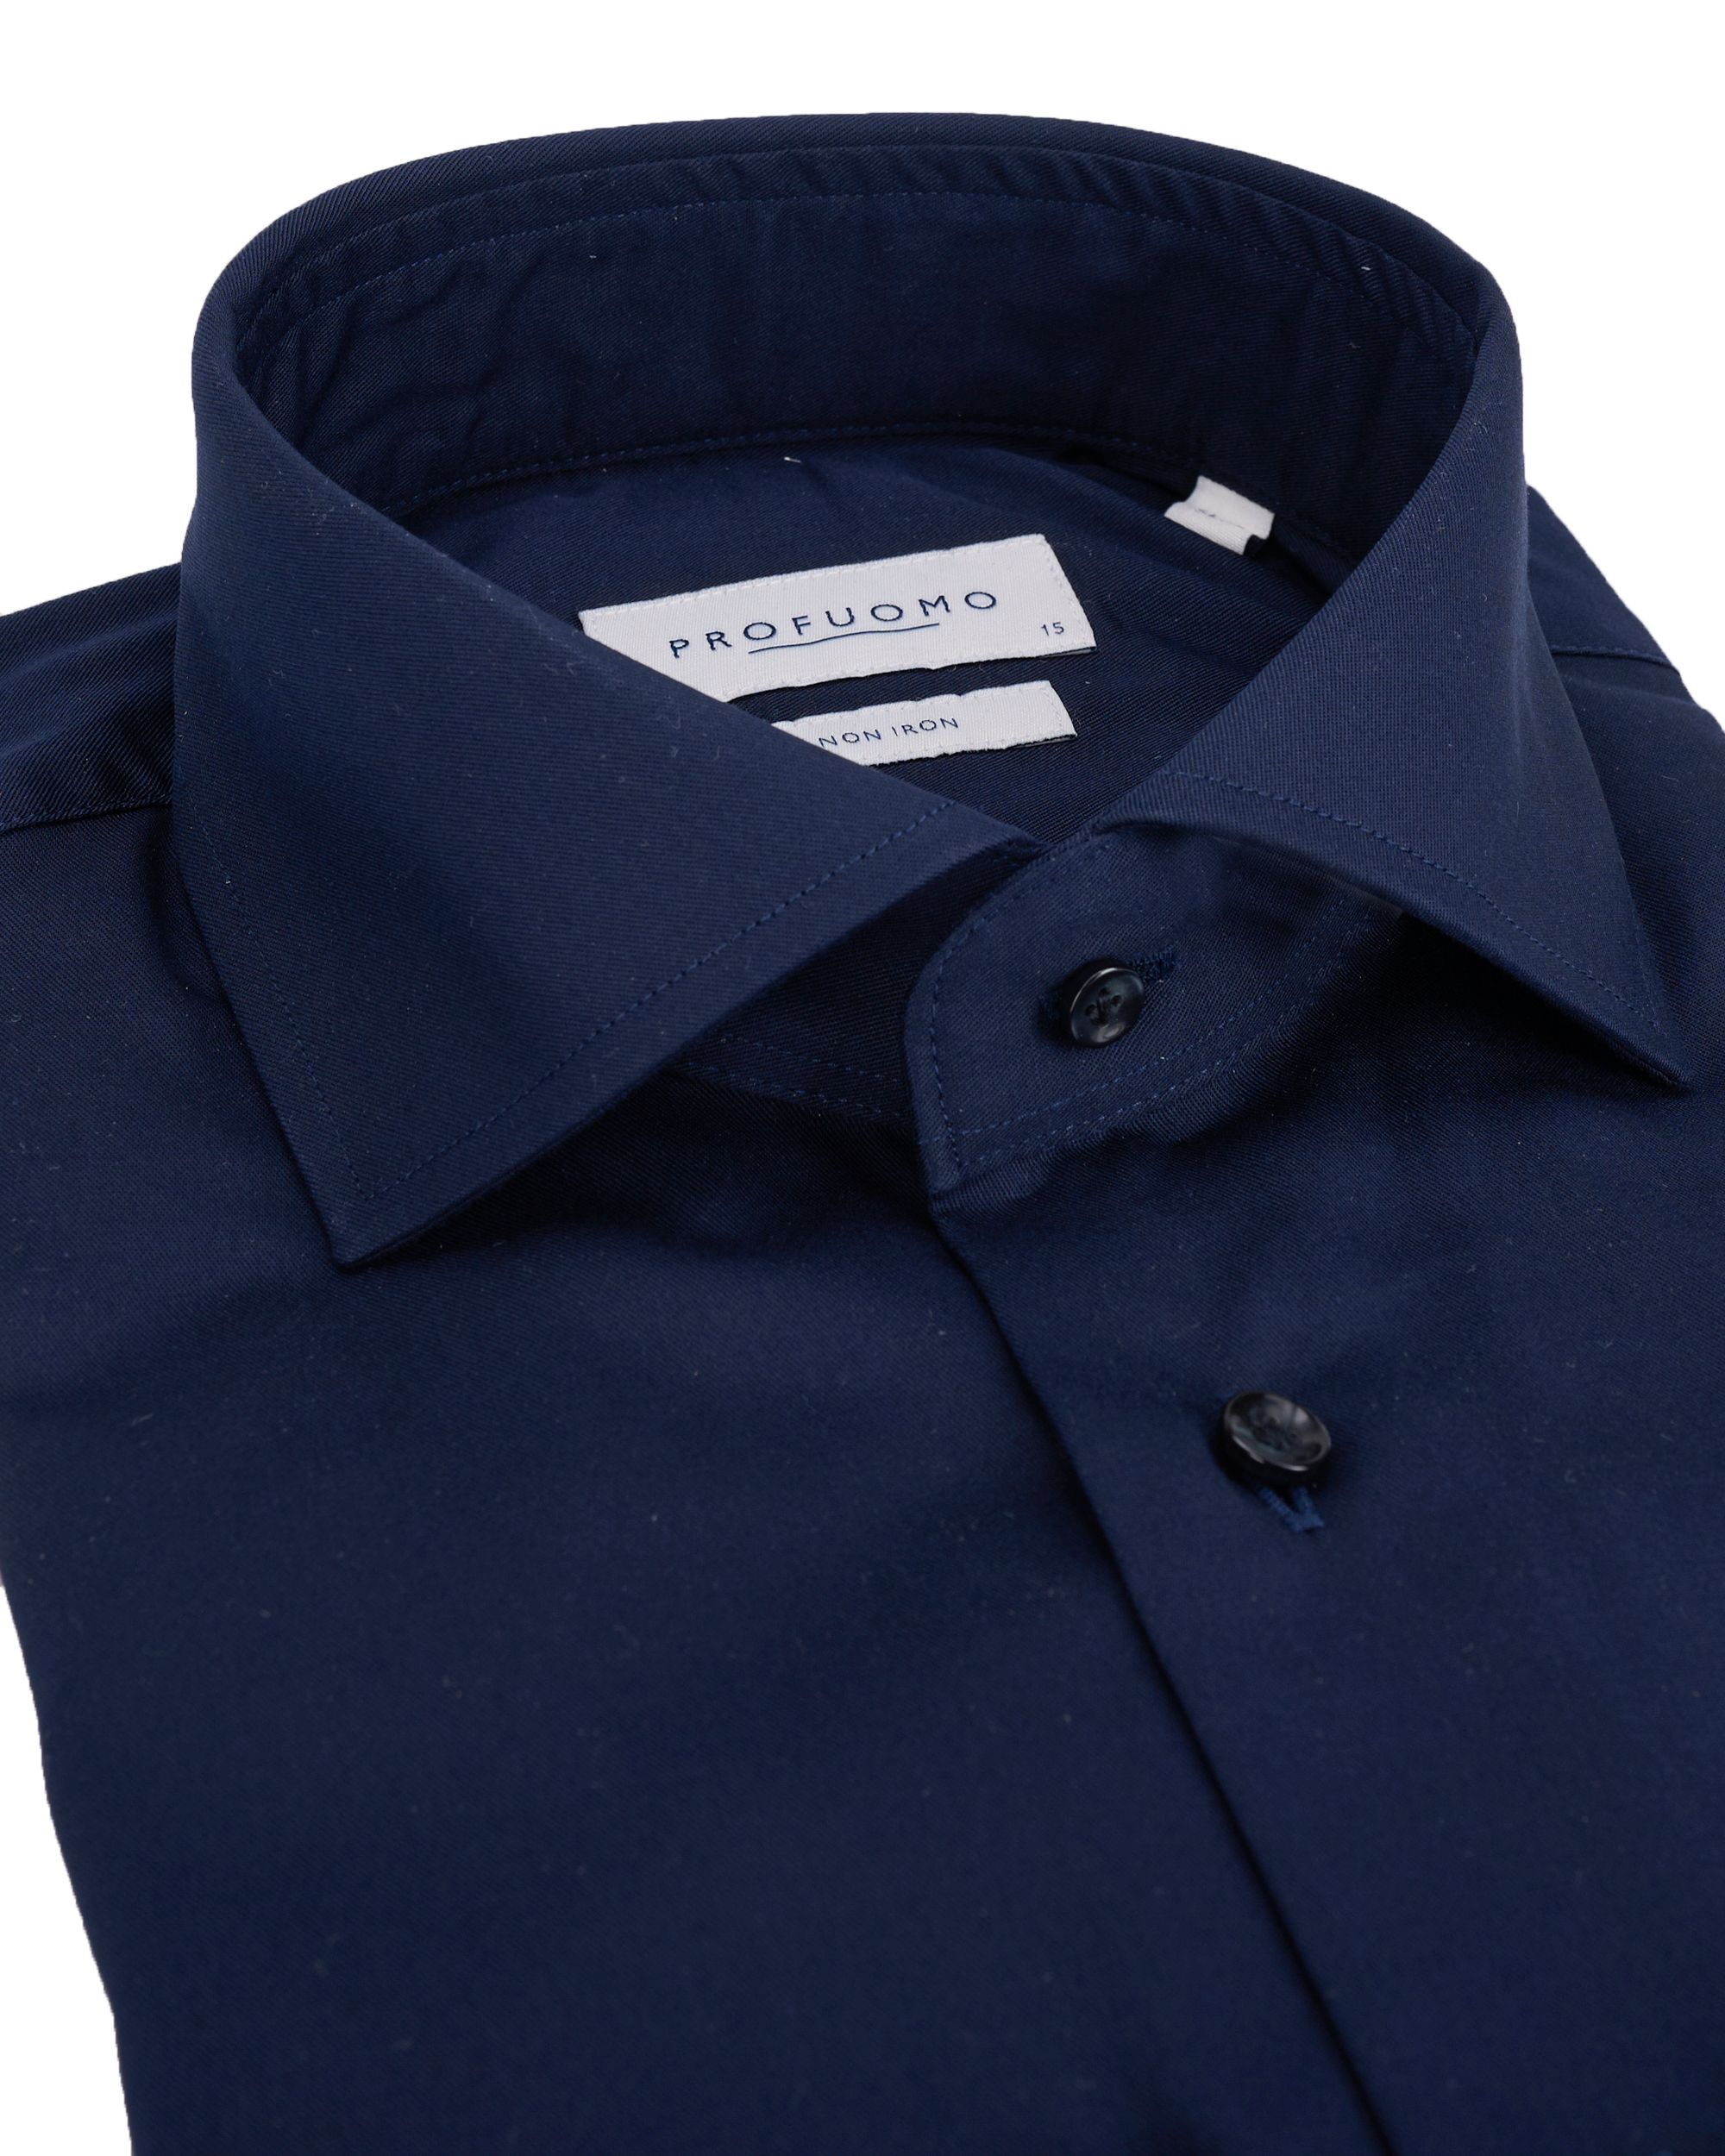 Profuomo Originale Slim fit Overhemd Extra LM Blauw 064526-001-39